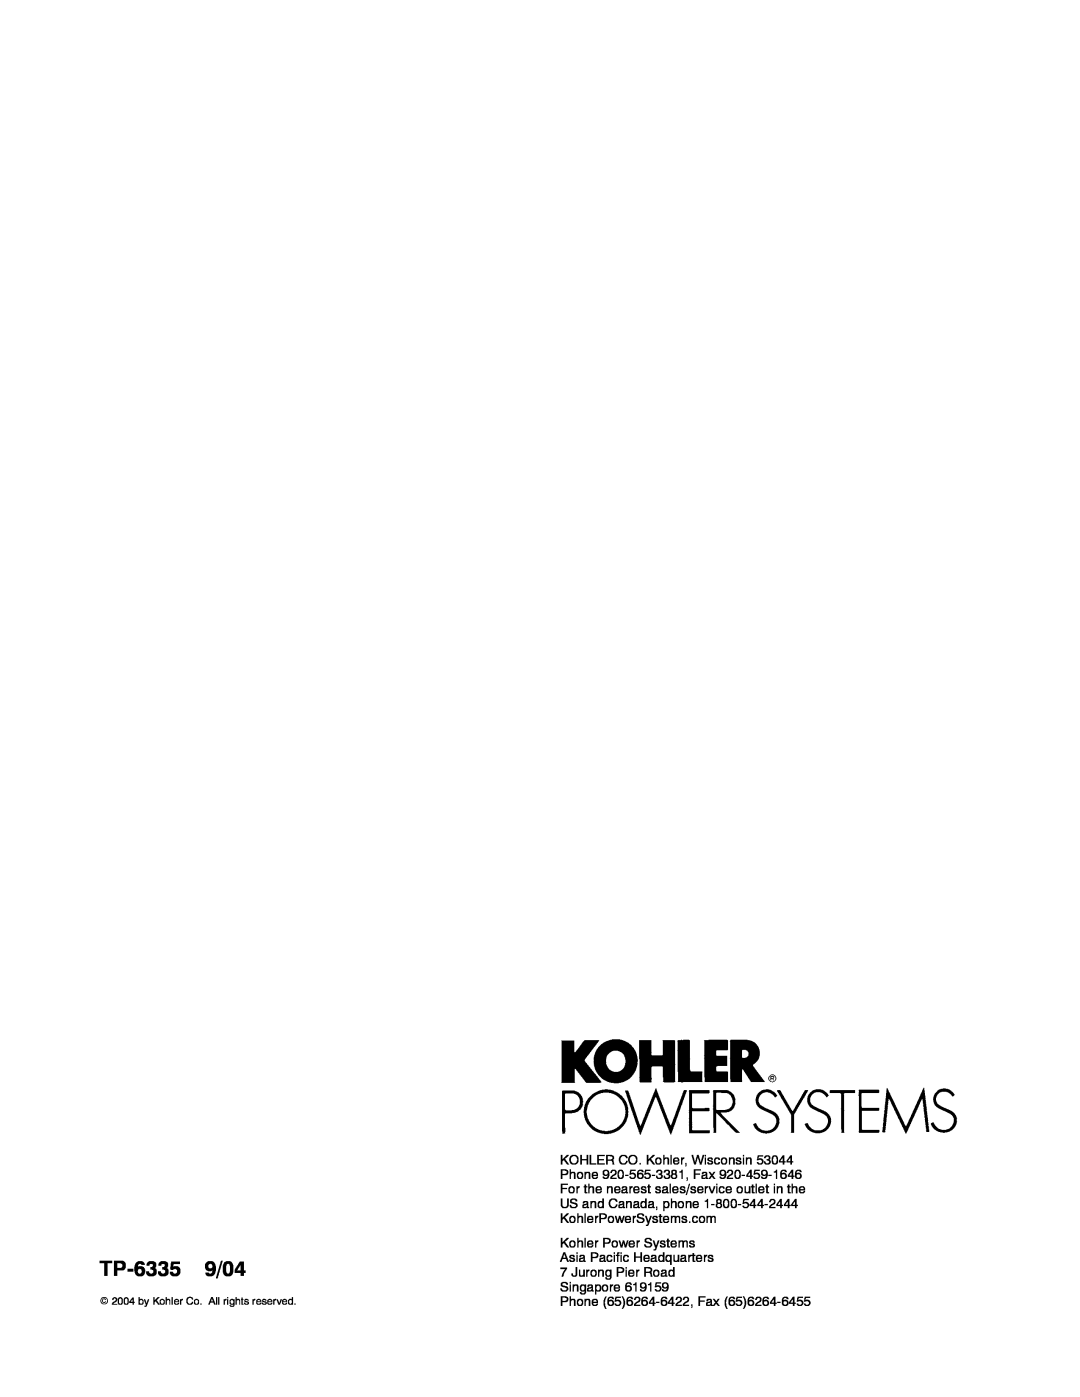 Kohler 13ERG, 15ERG, 10ERG manual TP-6335 9/04, Kohler Power Systems Asia Pacific Headquarters 7 Jurong Pier Road 